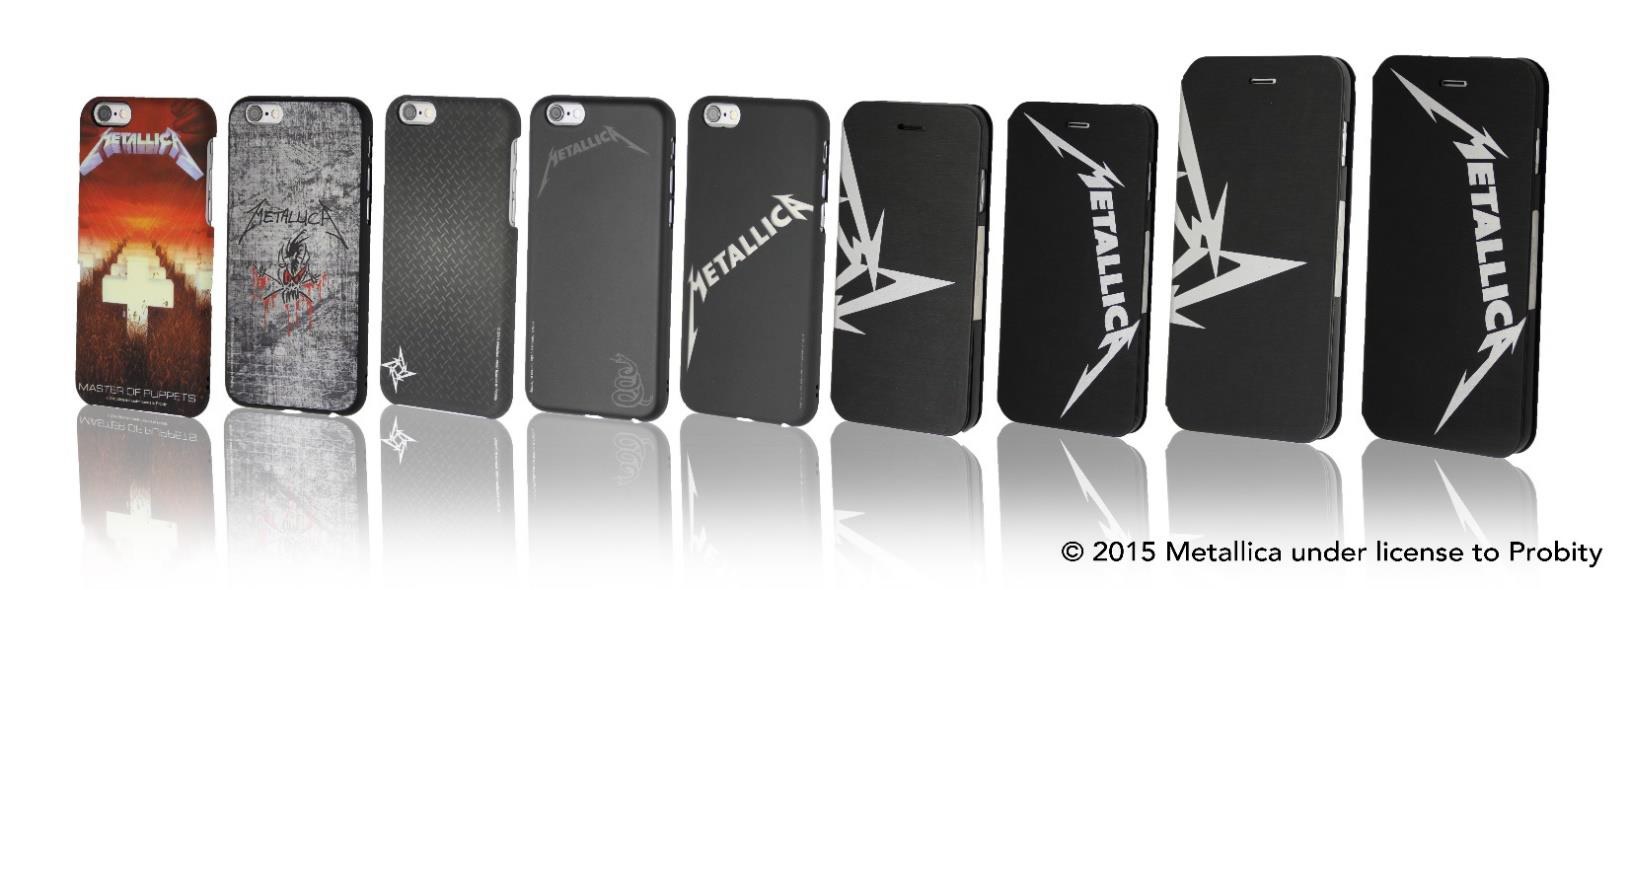 世界最強のへヴィメタルバンド Metallica Iphone 6 Iphone 6 Plusケースで登場 新見楽器株式会社